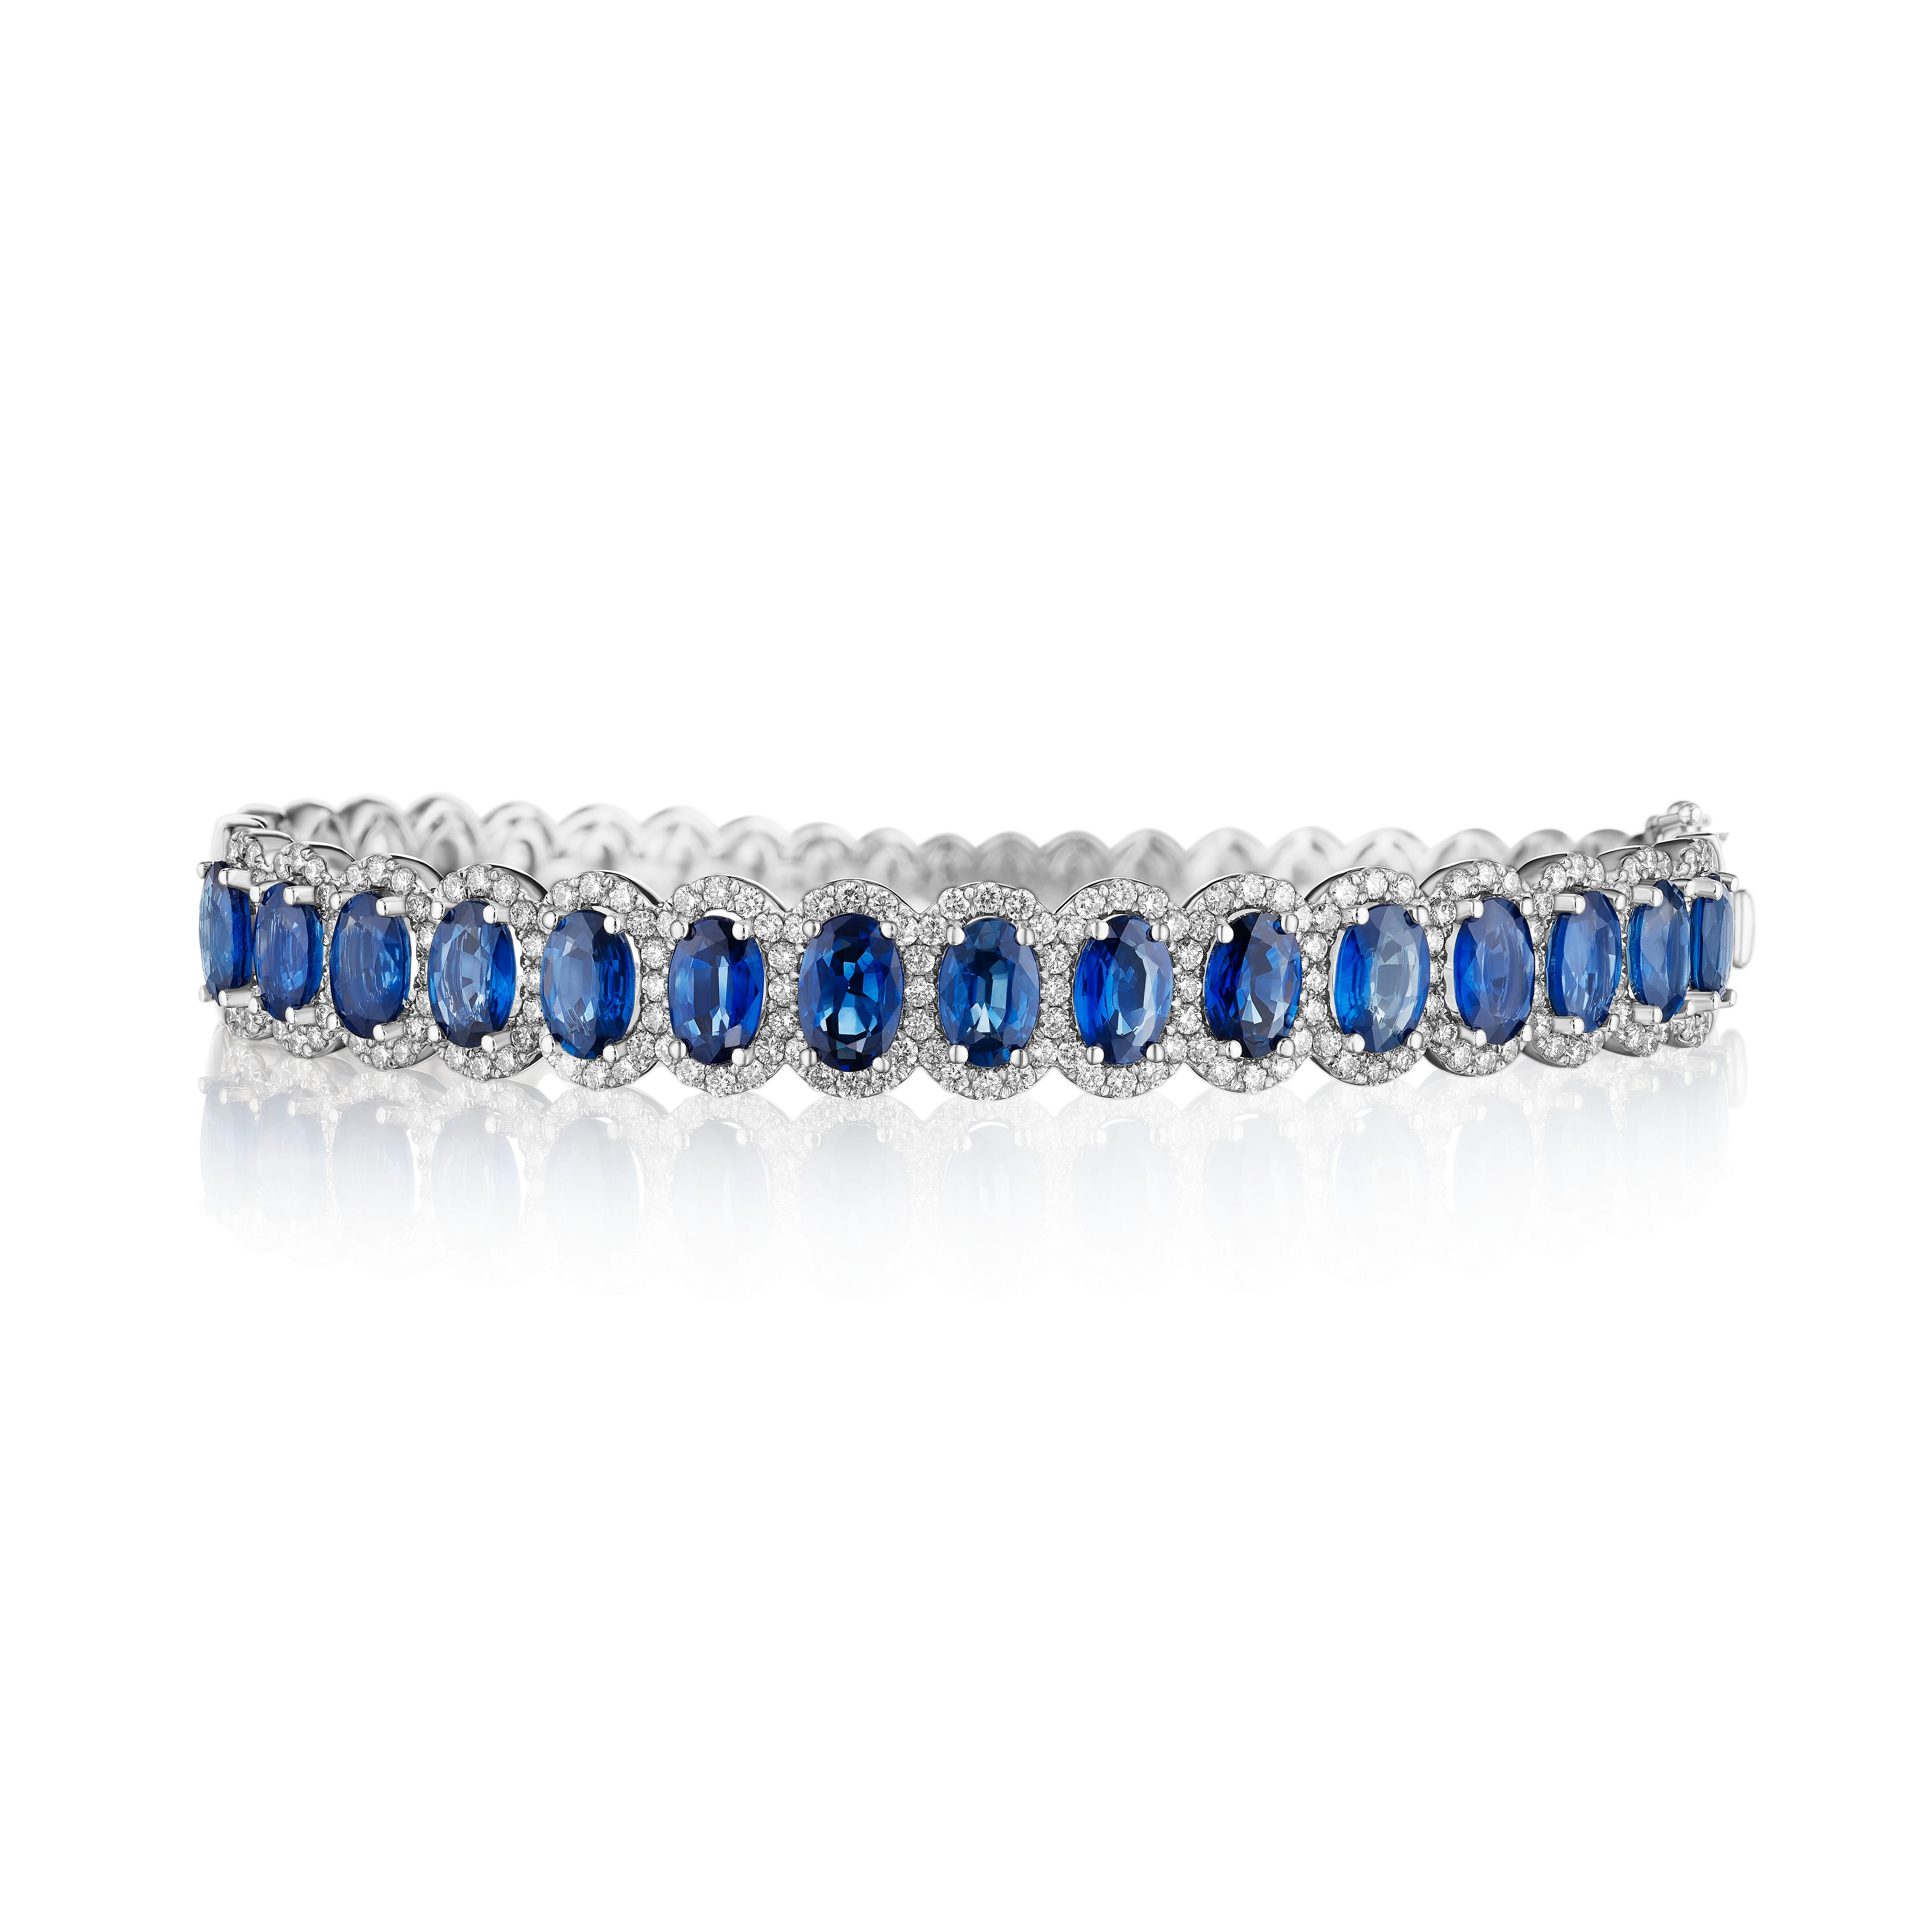 • Un assortiment vraiment exquis de 15 saphirs bleus de taille ovale est encadré par de délicats halos de diamants ronds de taille brillante dans ce magnifique bracelet. Les pierres sont serties dans de l'or blanc 14KT et ont un poids total combiné